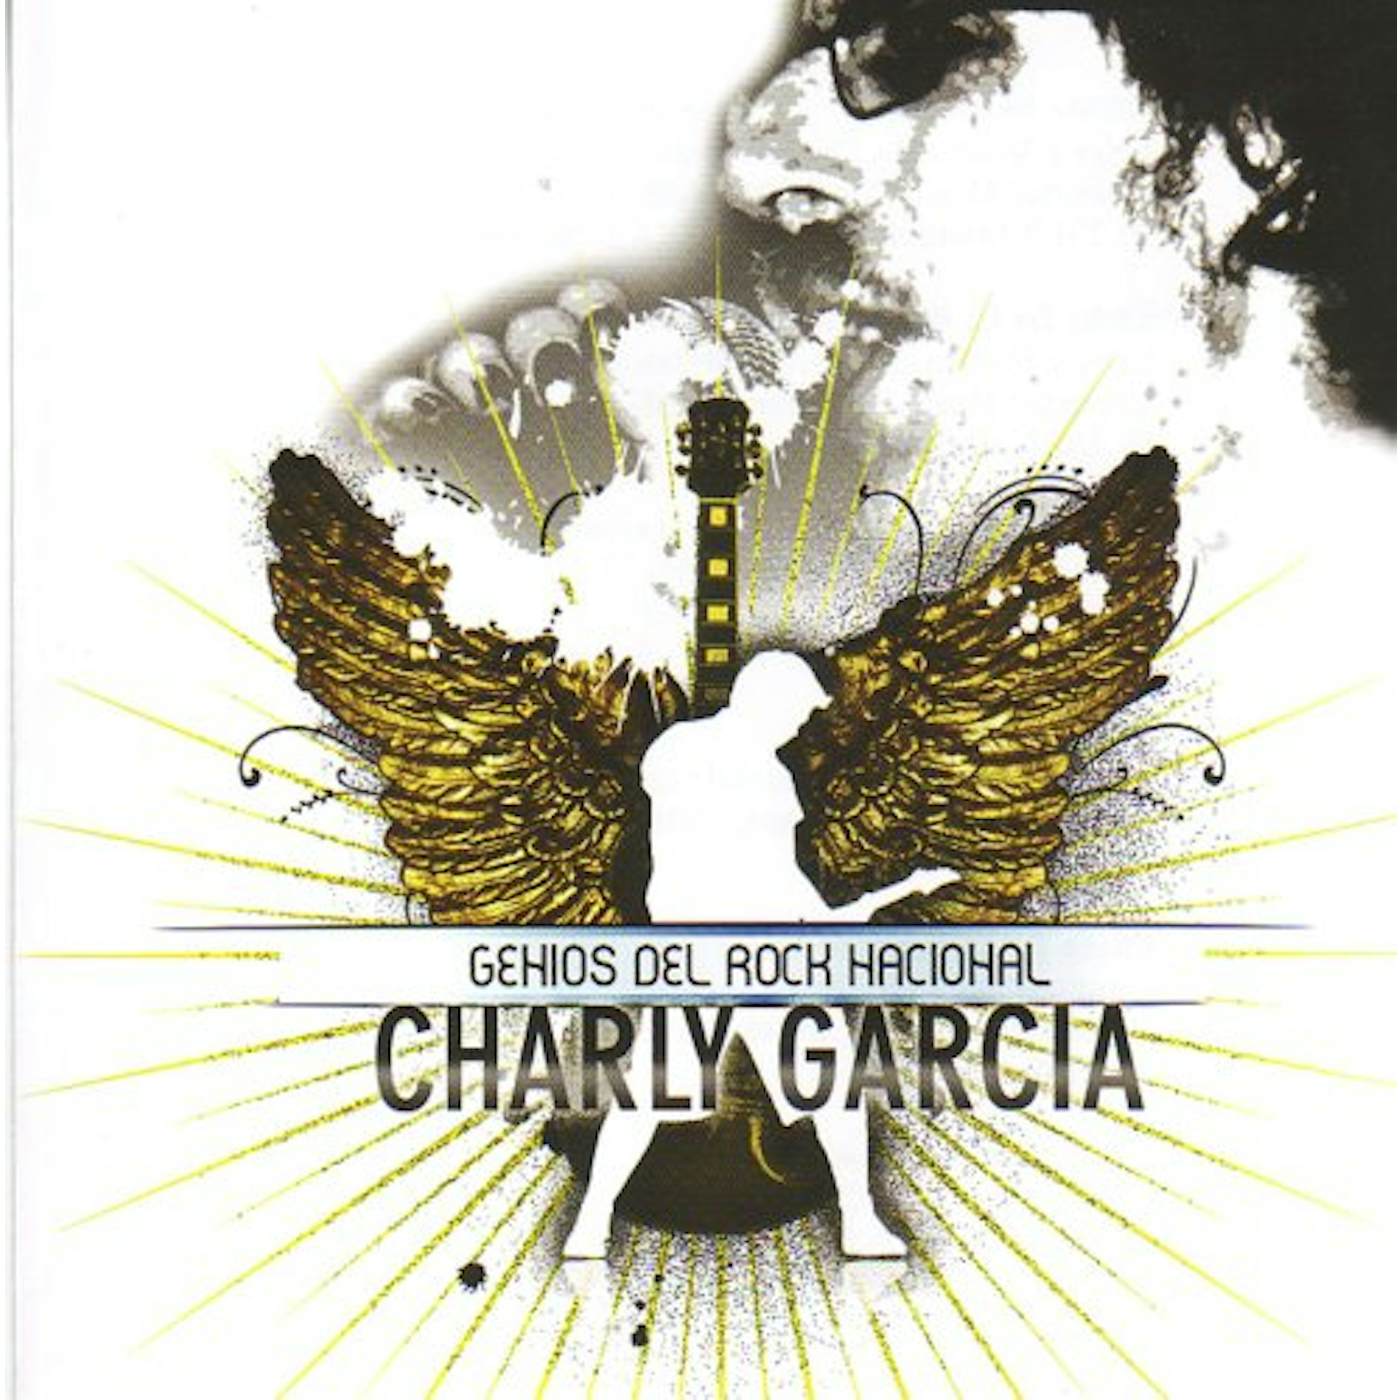 Charly Garcia Pena GENIOS DEL ROCK NACIONAL CD